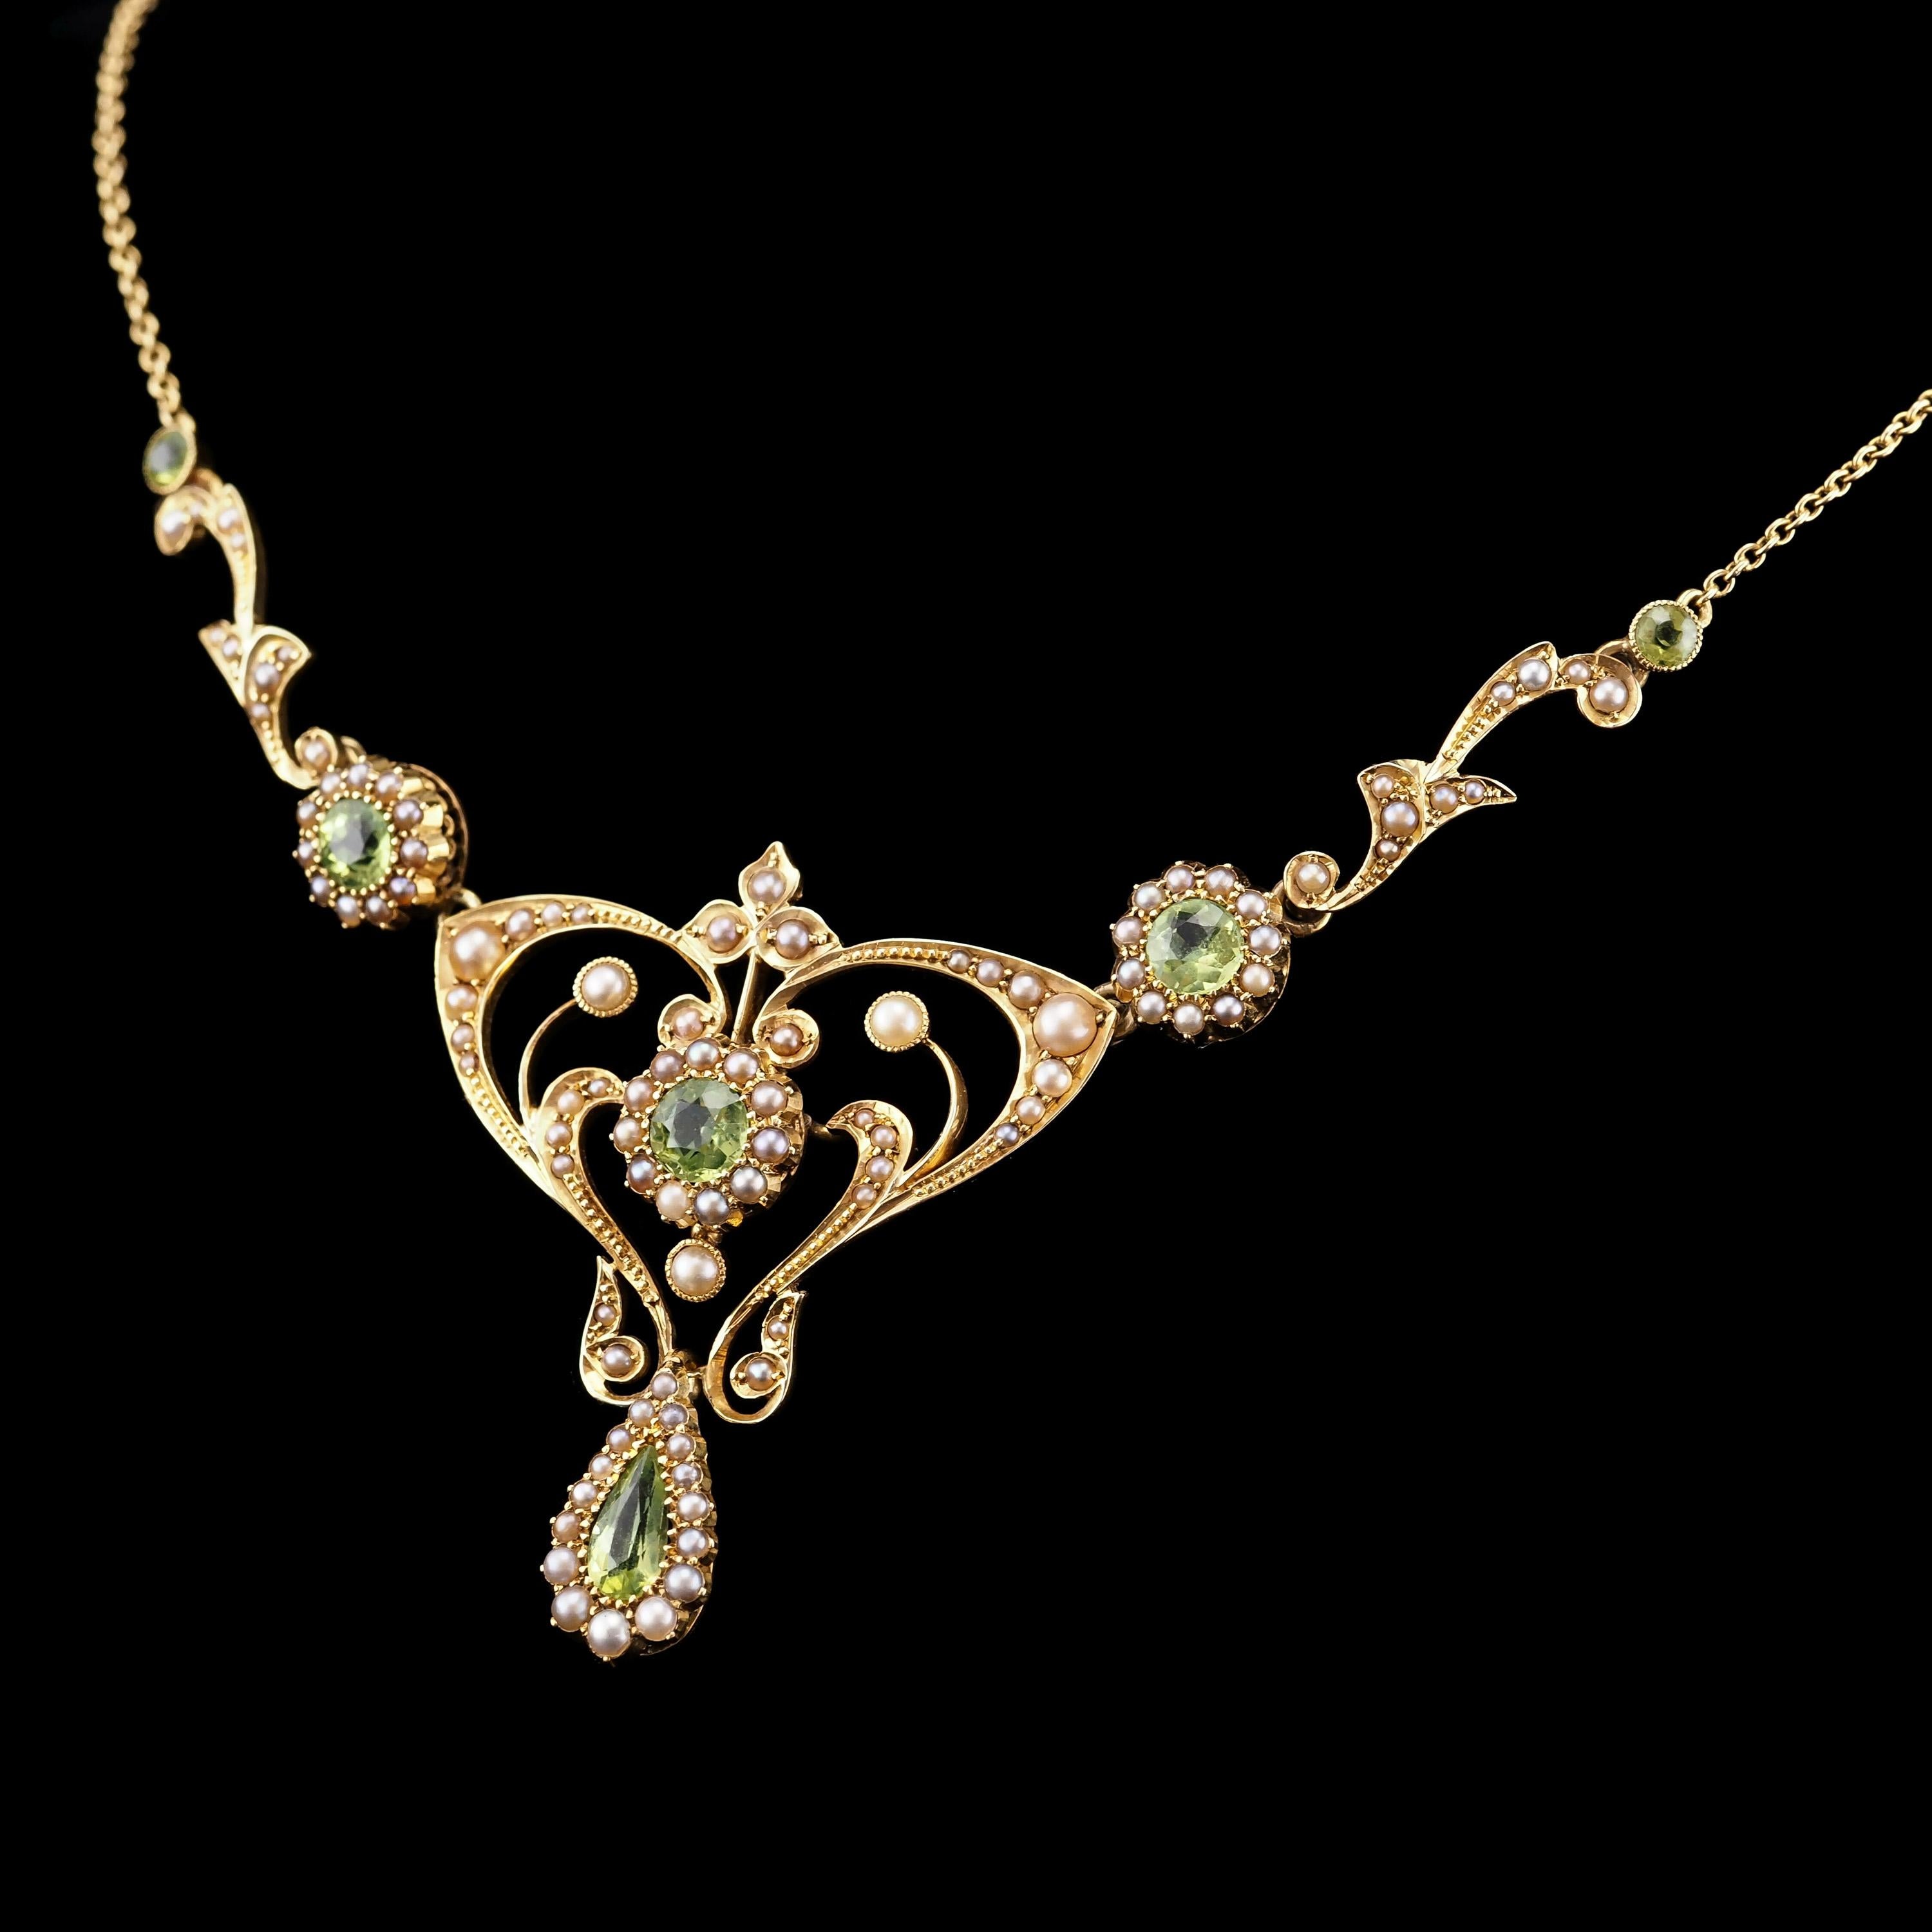 Antique 15K Gold Peridot & Pearl Lavalier Necklace - Art Nouveau c.1900s 4